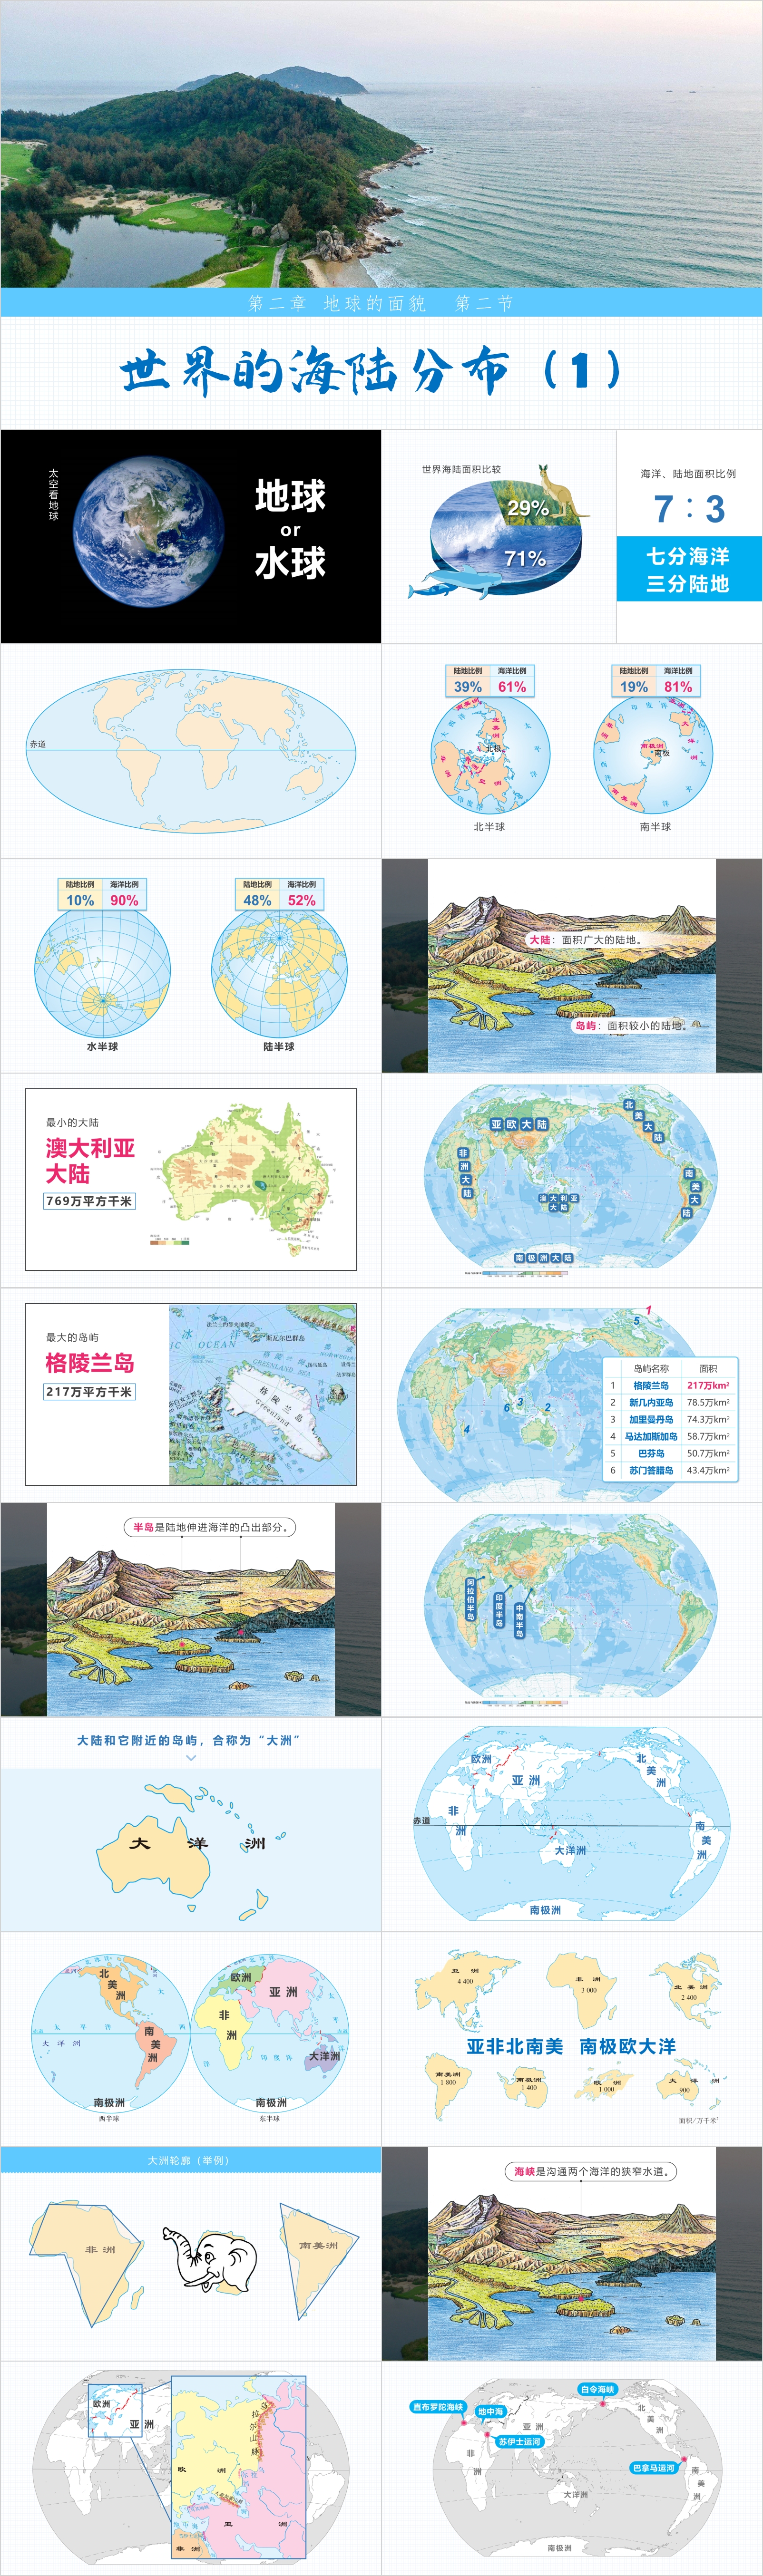 2.2 世界的海陆分布（1）.jpg